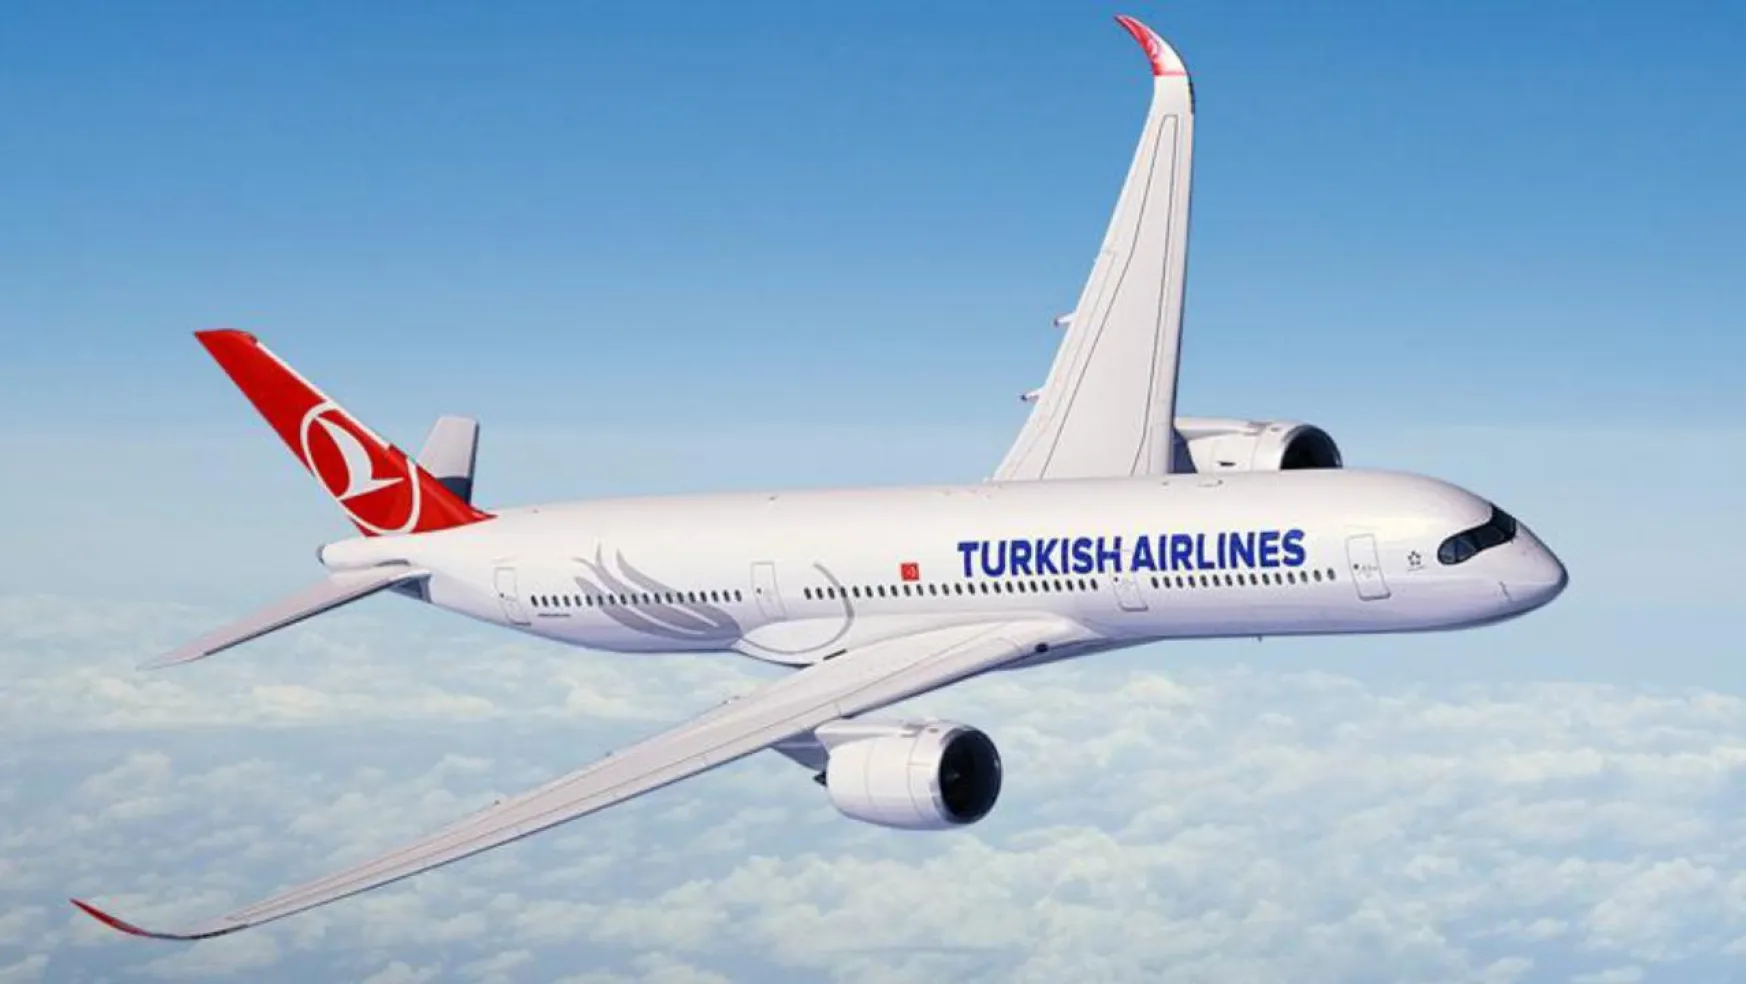 Dünyadaki En Güvenli Havayolu Şirketleri Arasında Türk Hava Yolları da Var